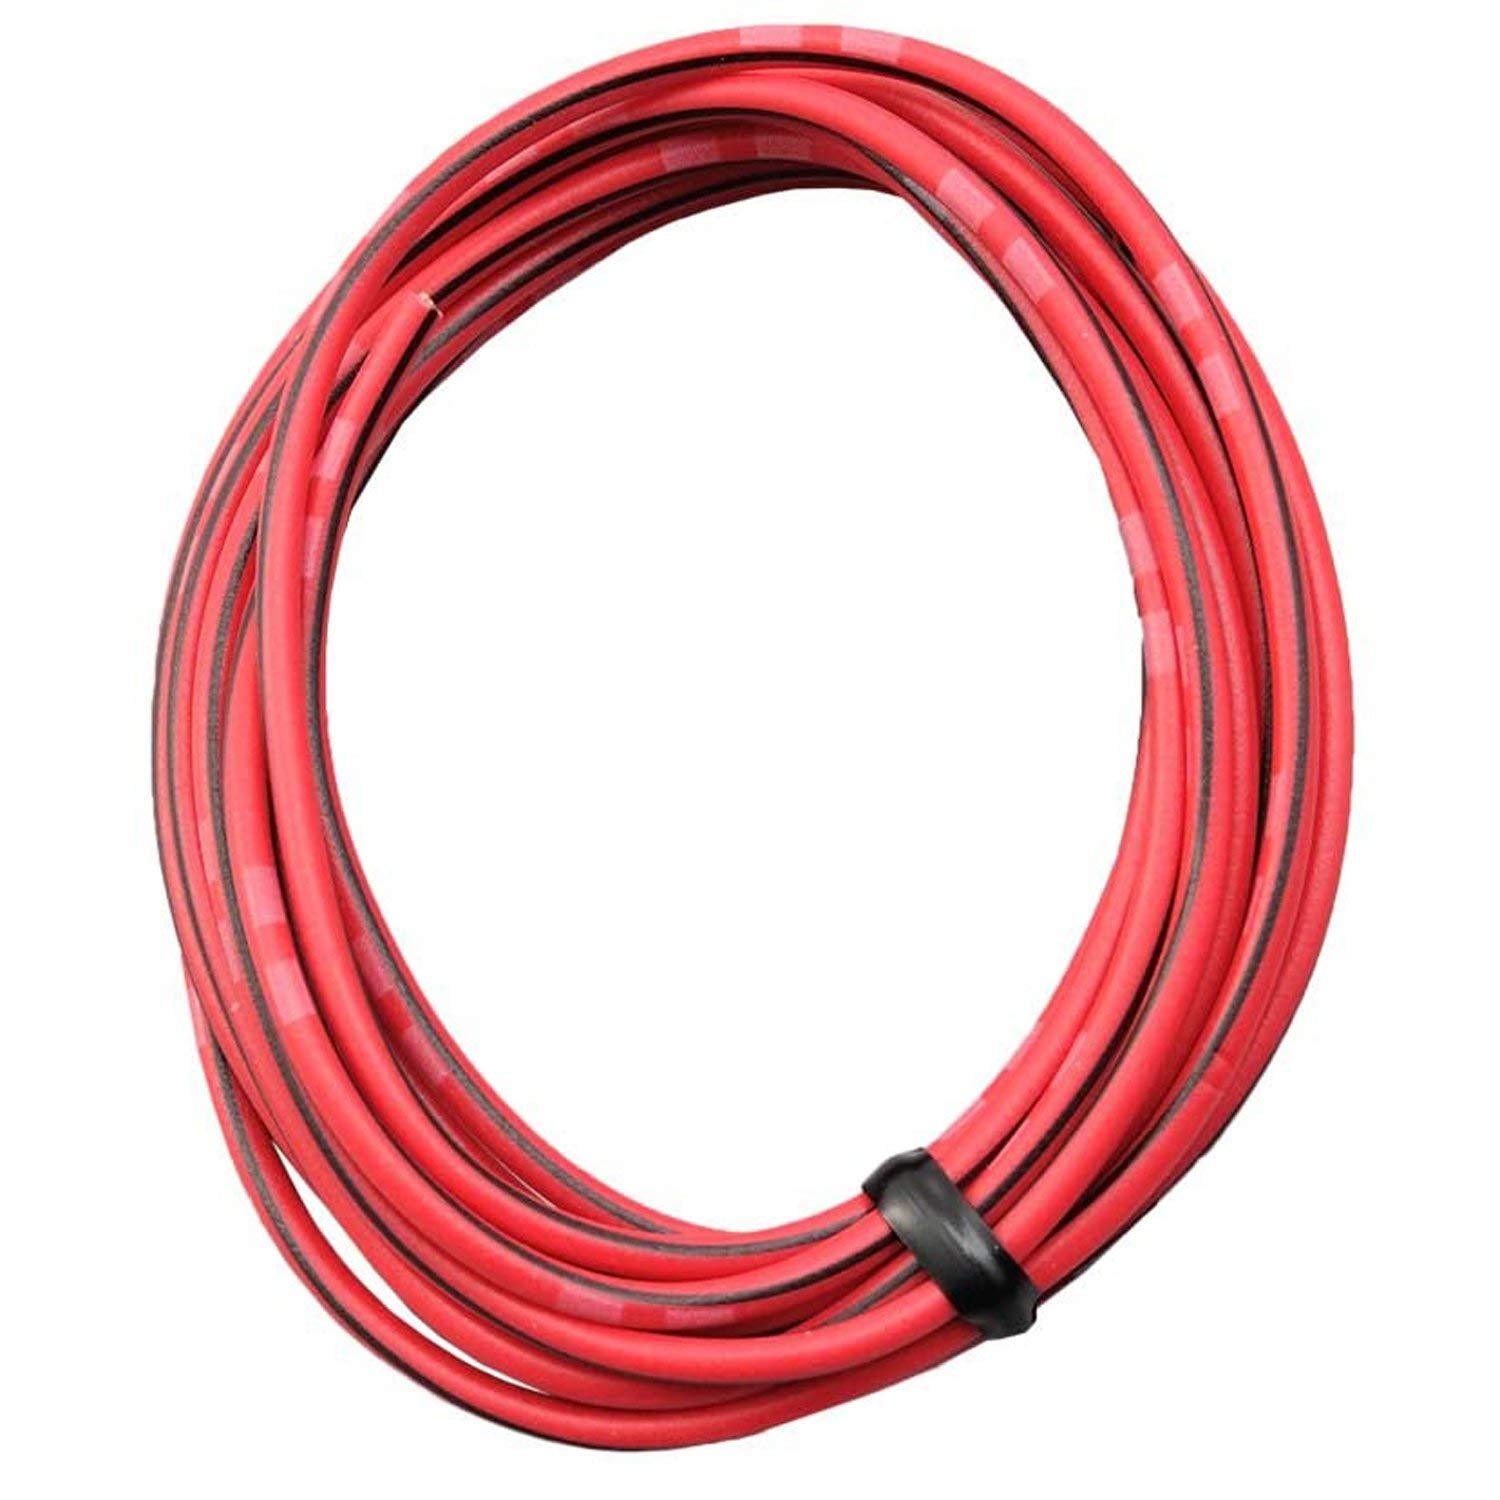 DAYTONA farbiges Kabel AWG18 0.75qmm, 2 Meter, rot/schwarz von Daytona